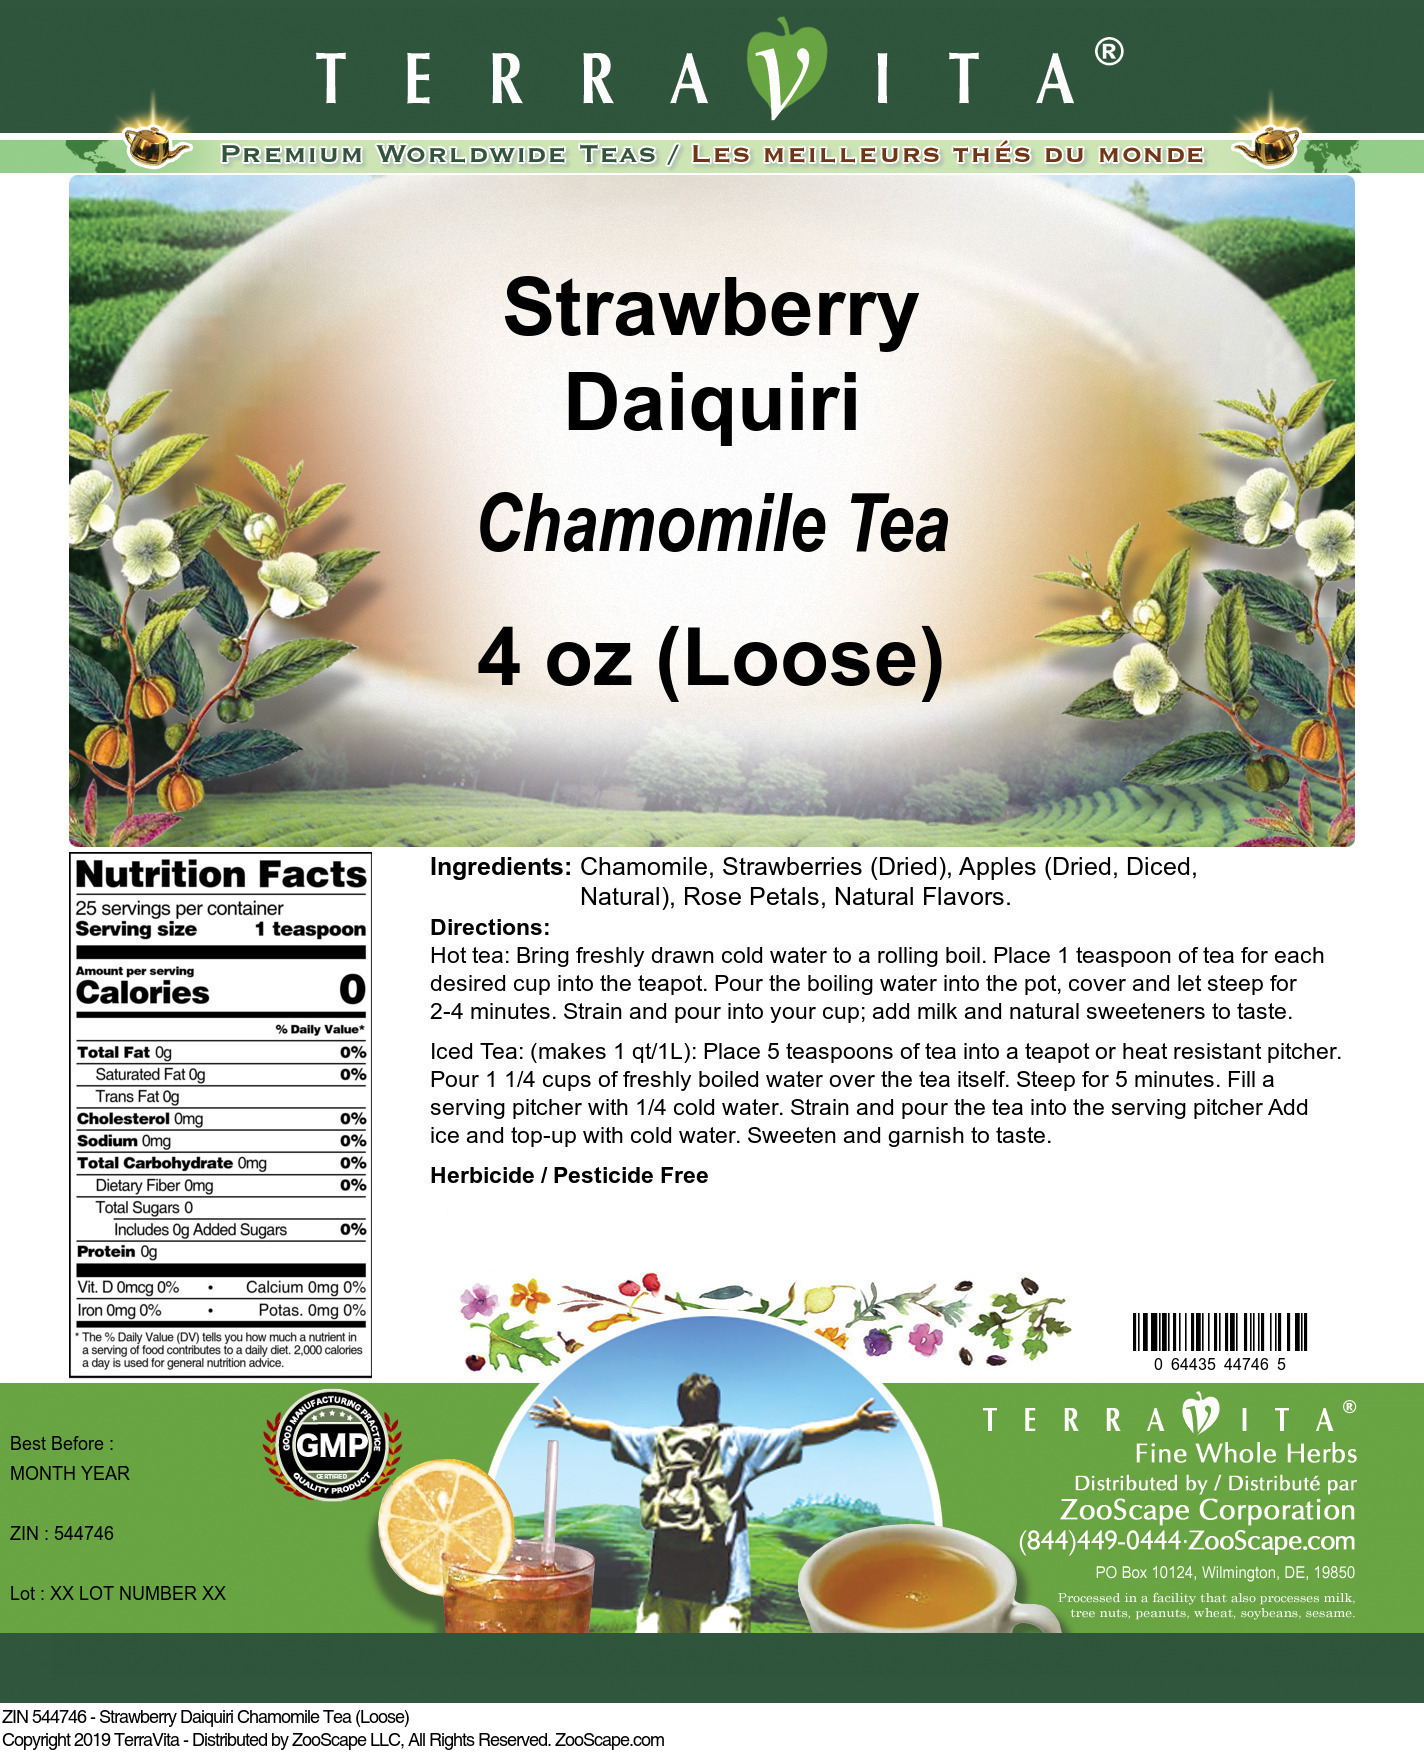 Strawberry Daiquiri Chamomile Tea (Loose) - Label